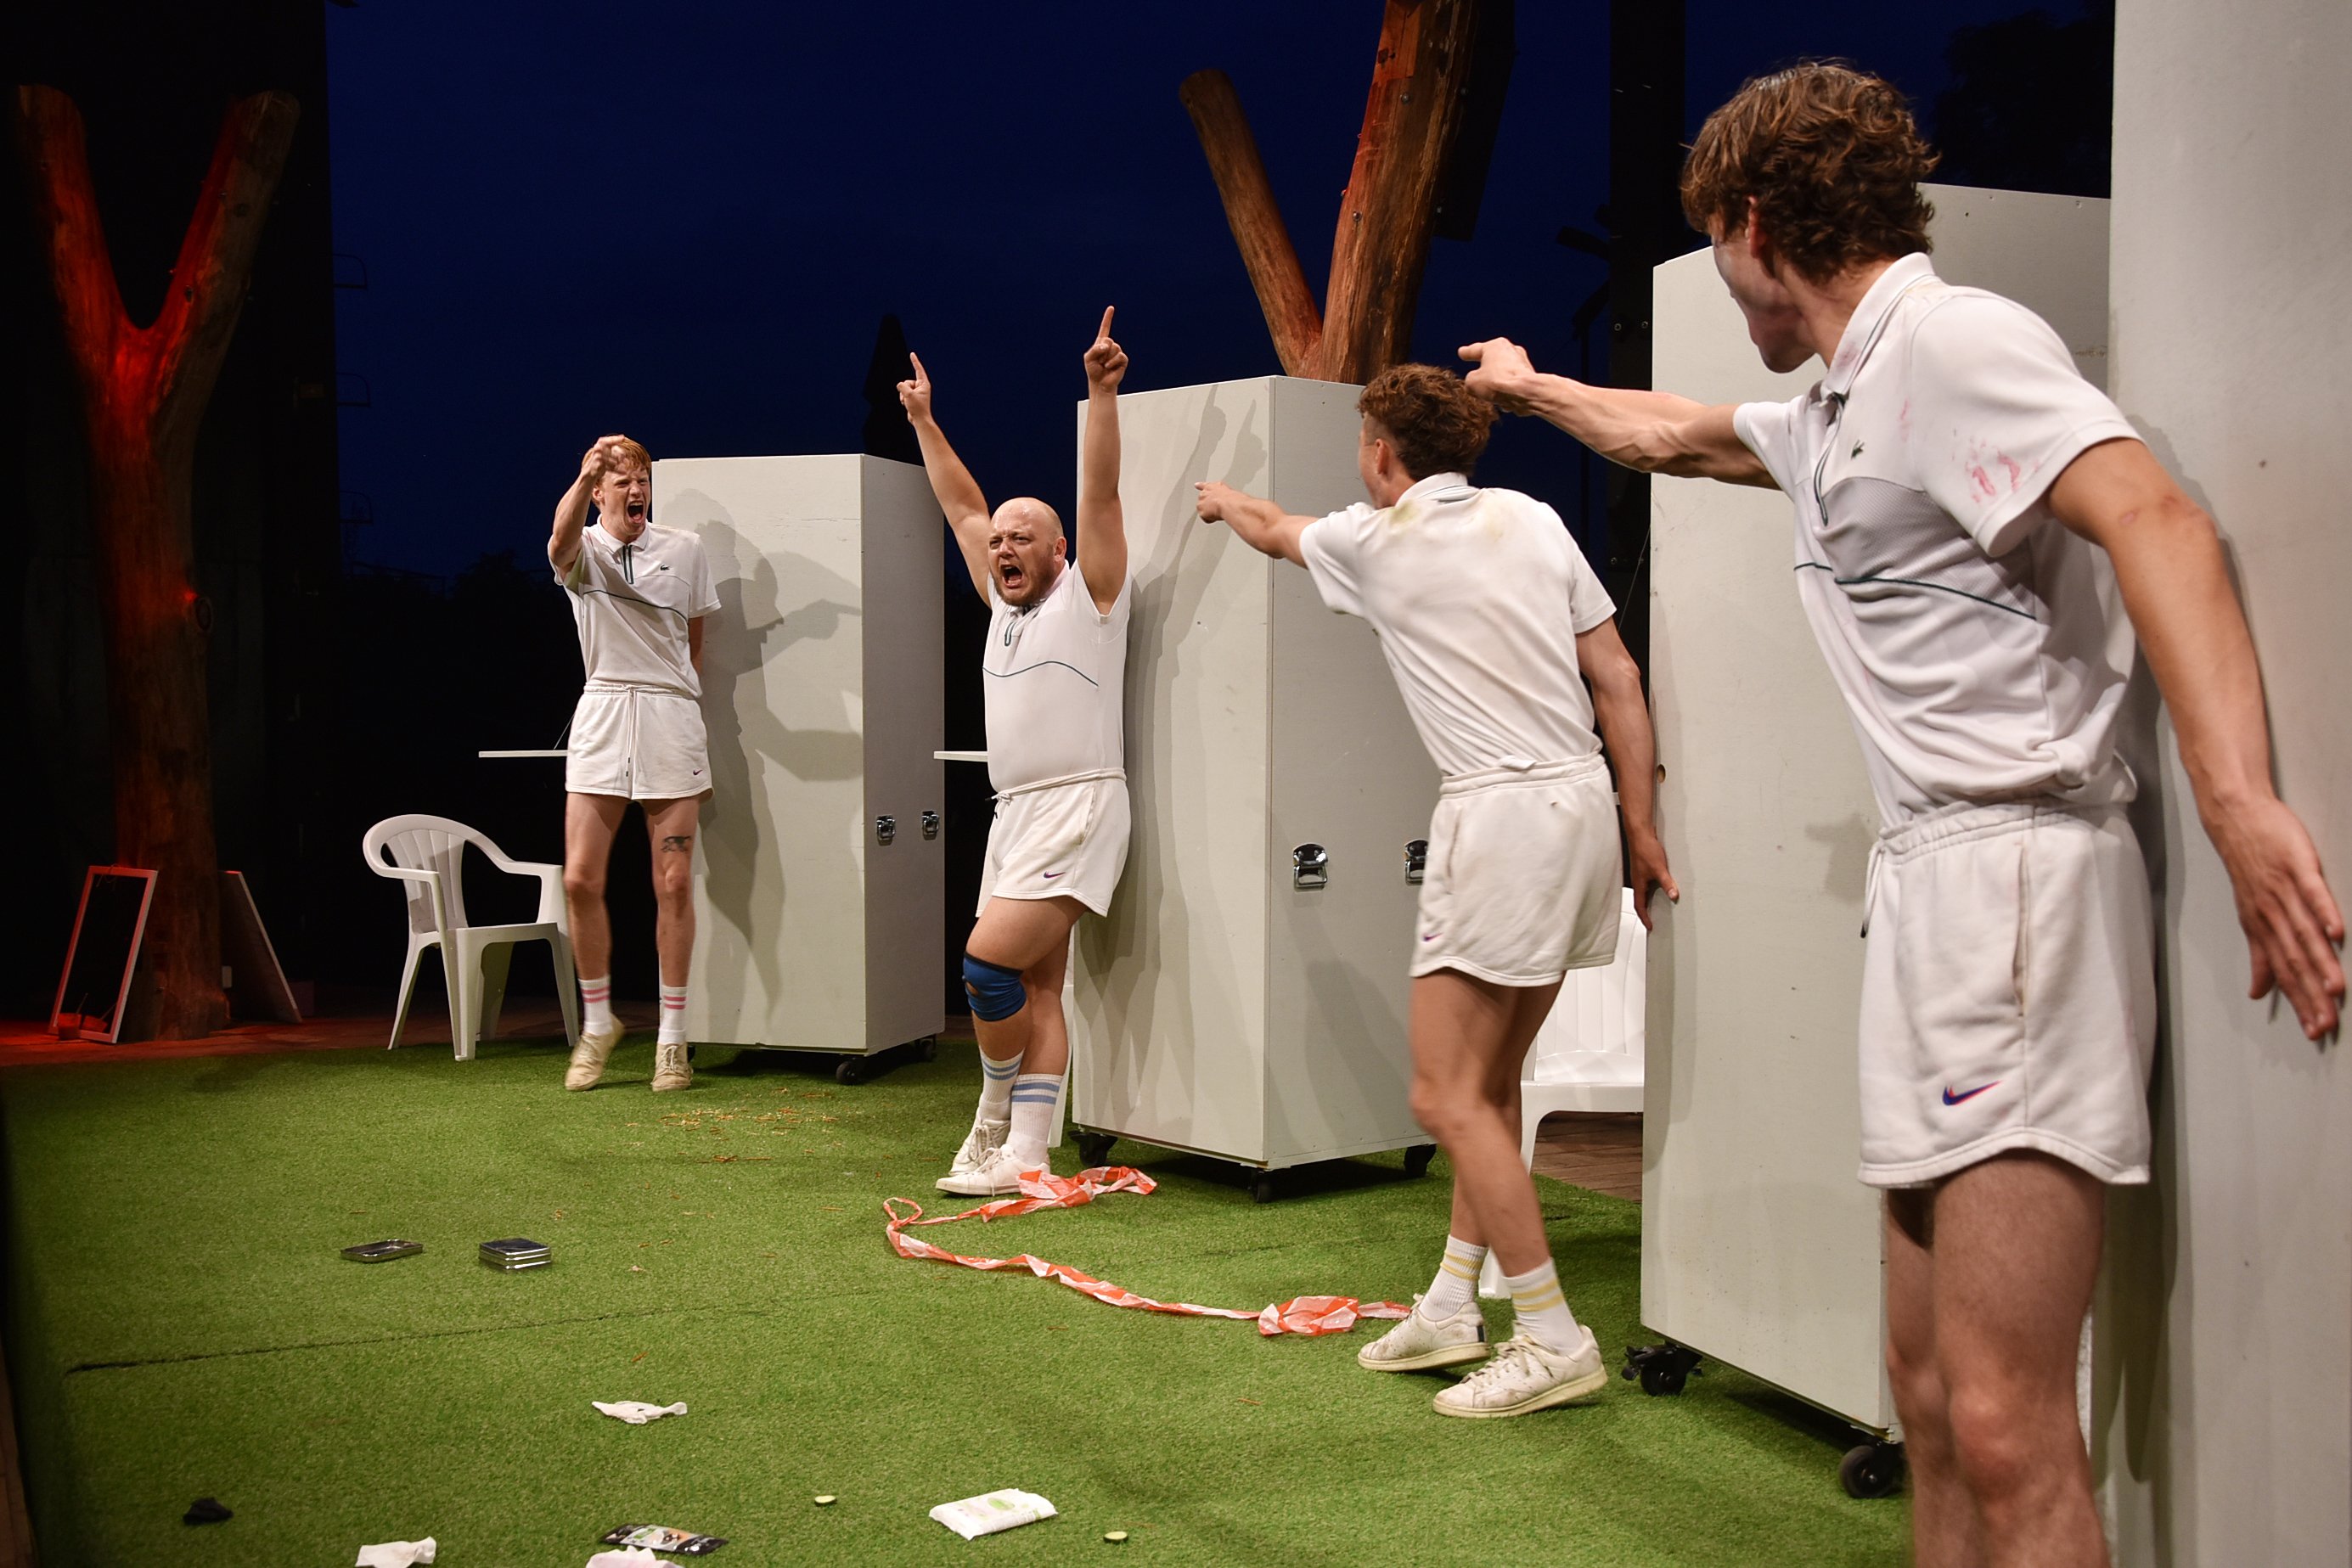 Rostocker Schauspielstudierende mit „In den Gärten oder Lysistrata Teil 2“ nach Aristophanes